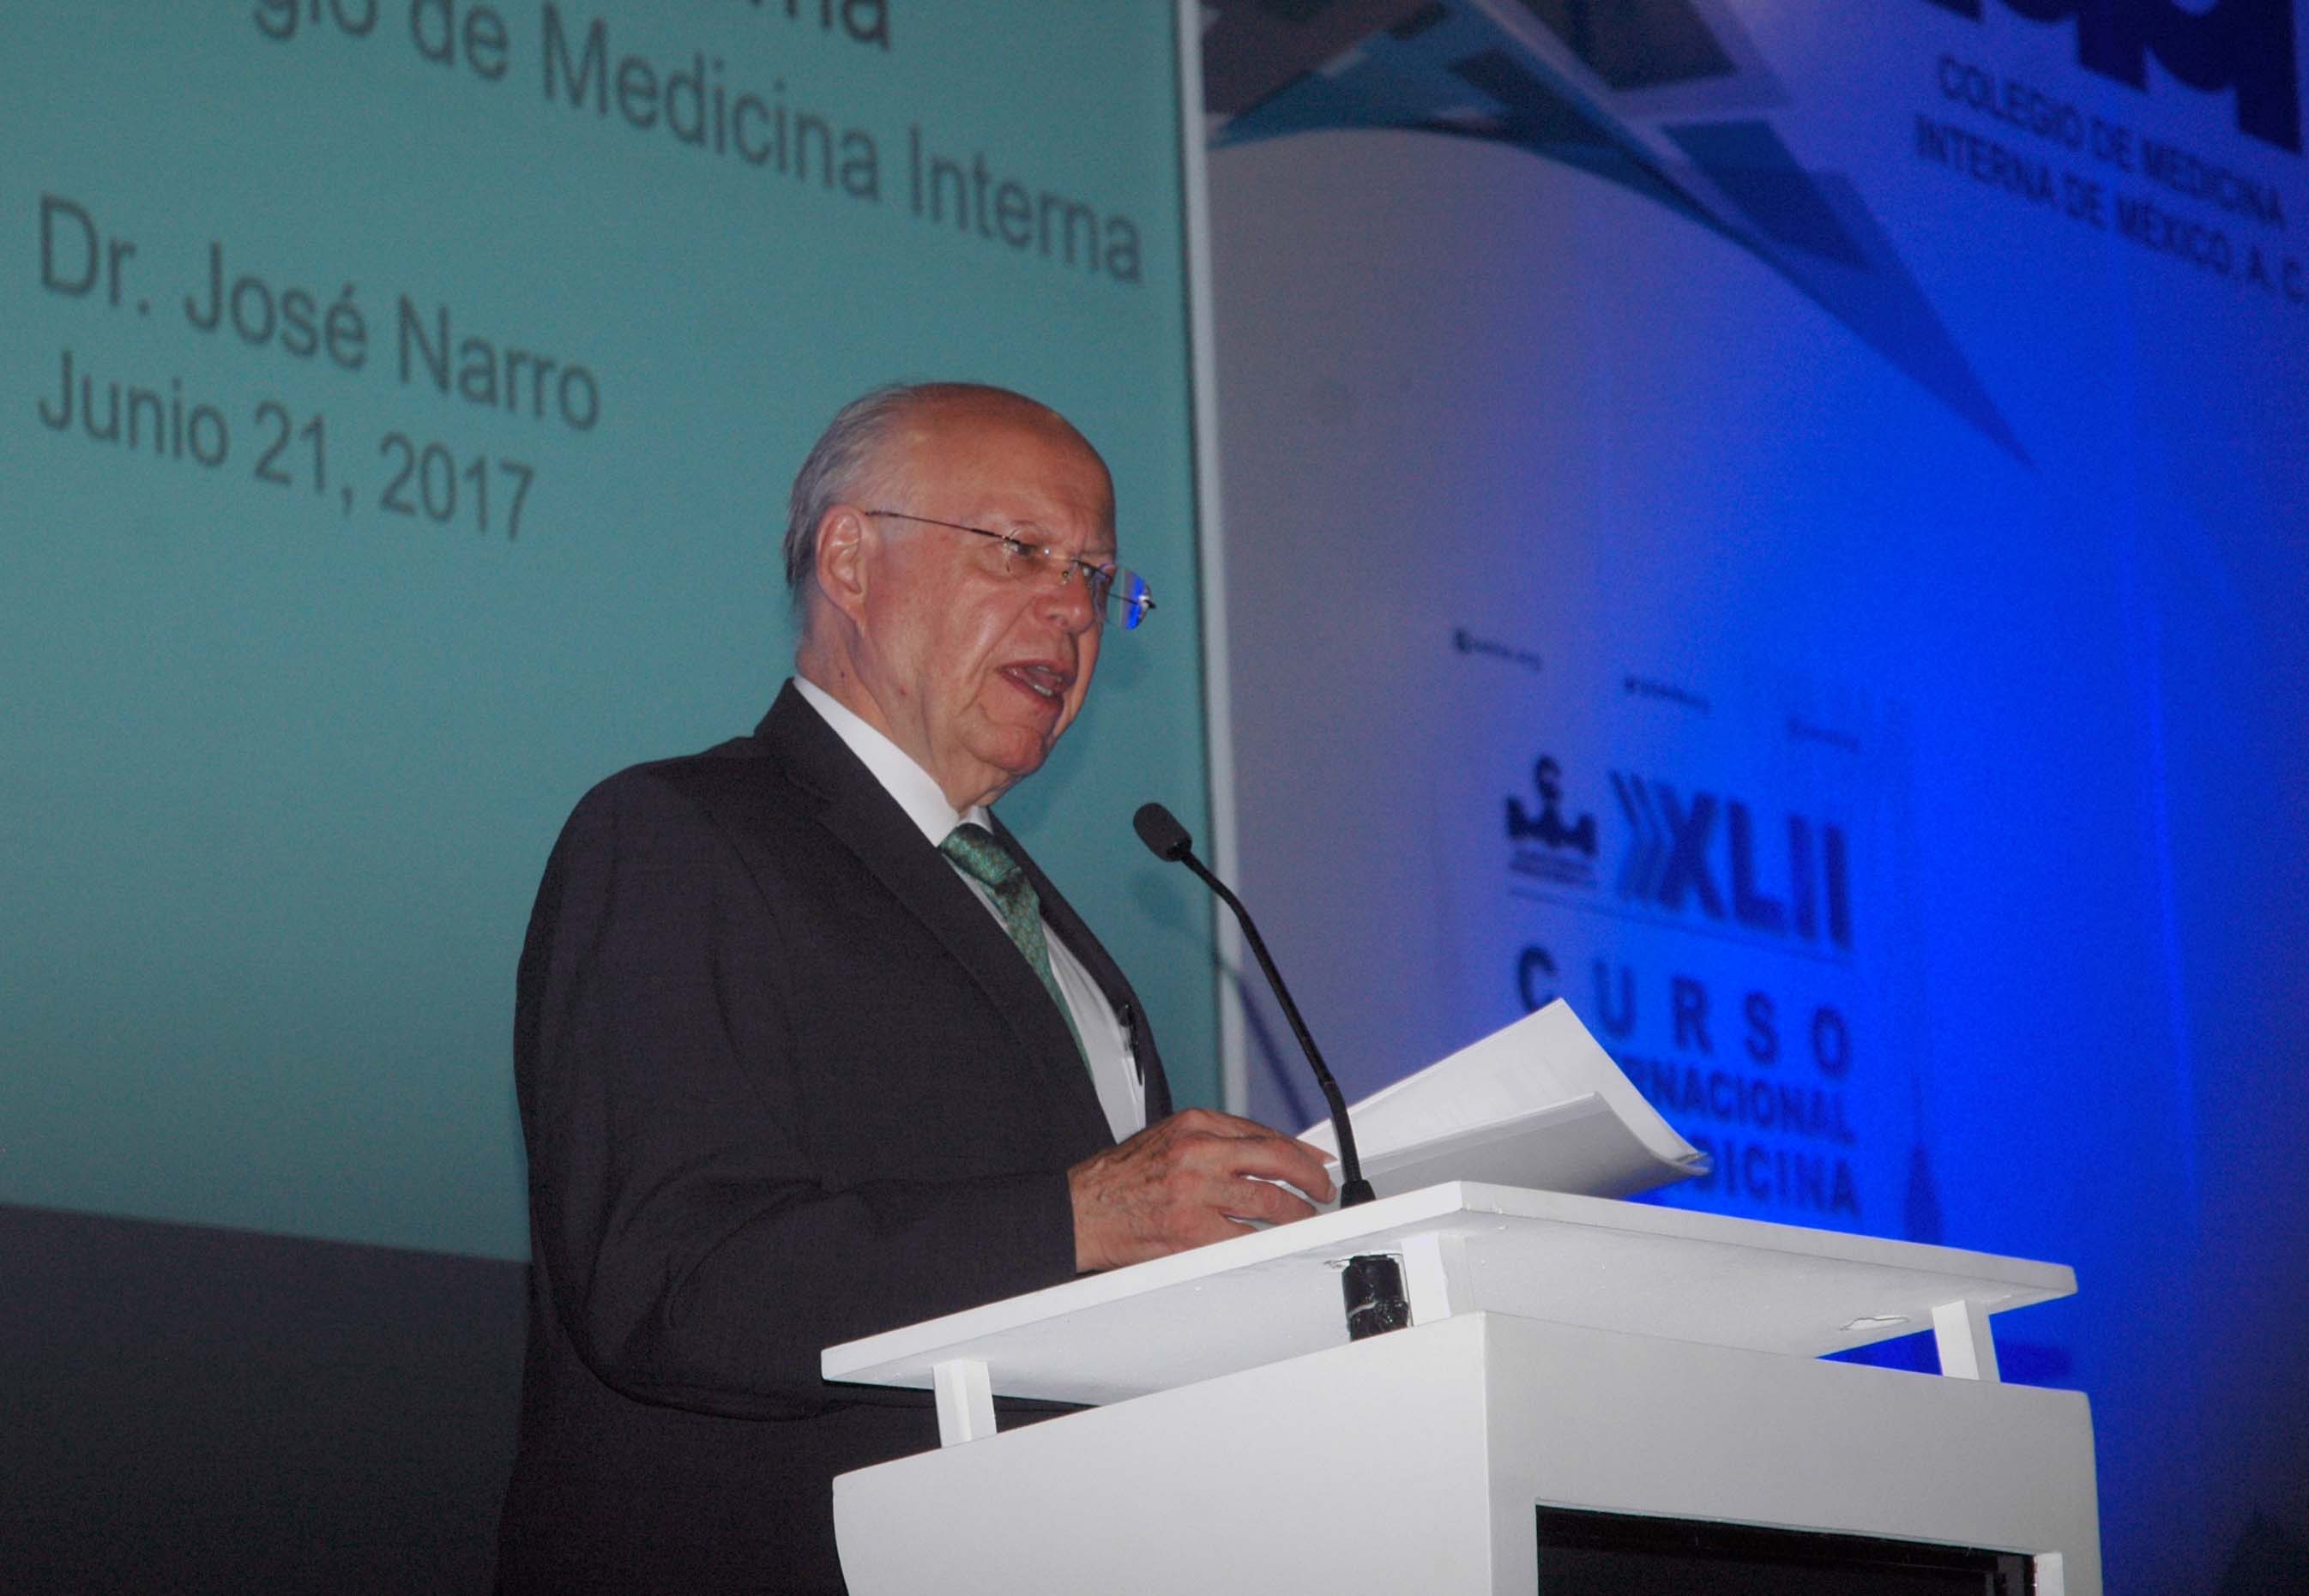 José Narro Robles dijo que se debe fortalecer la salud, la educación y el empleo.